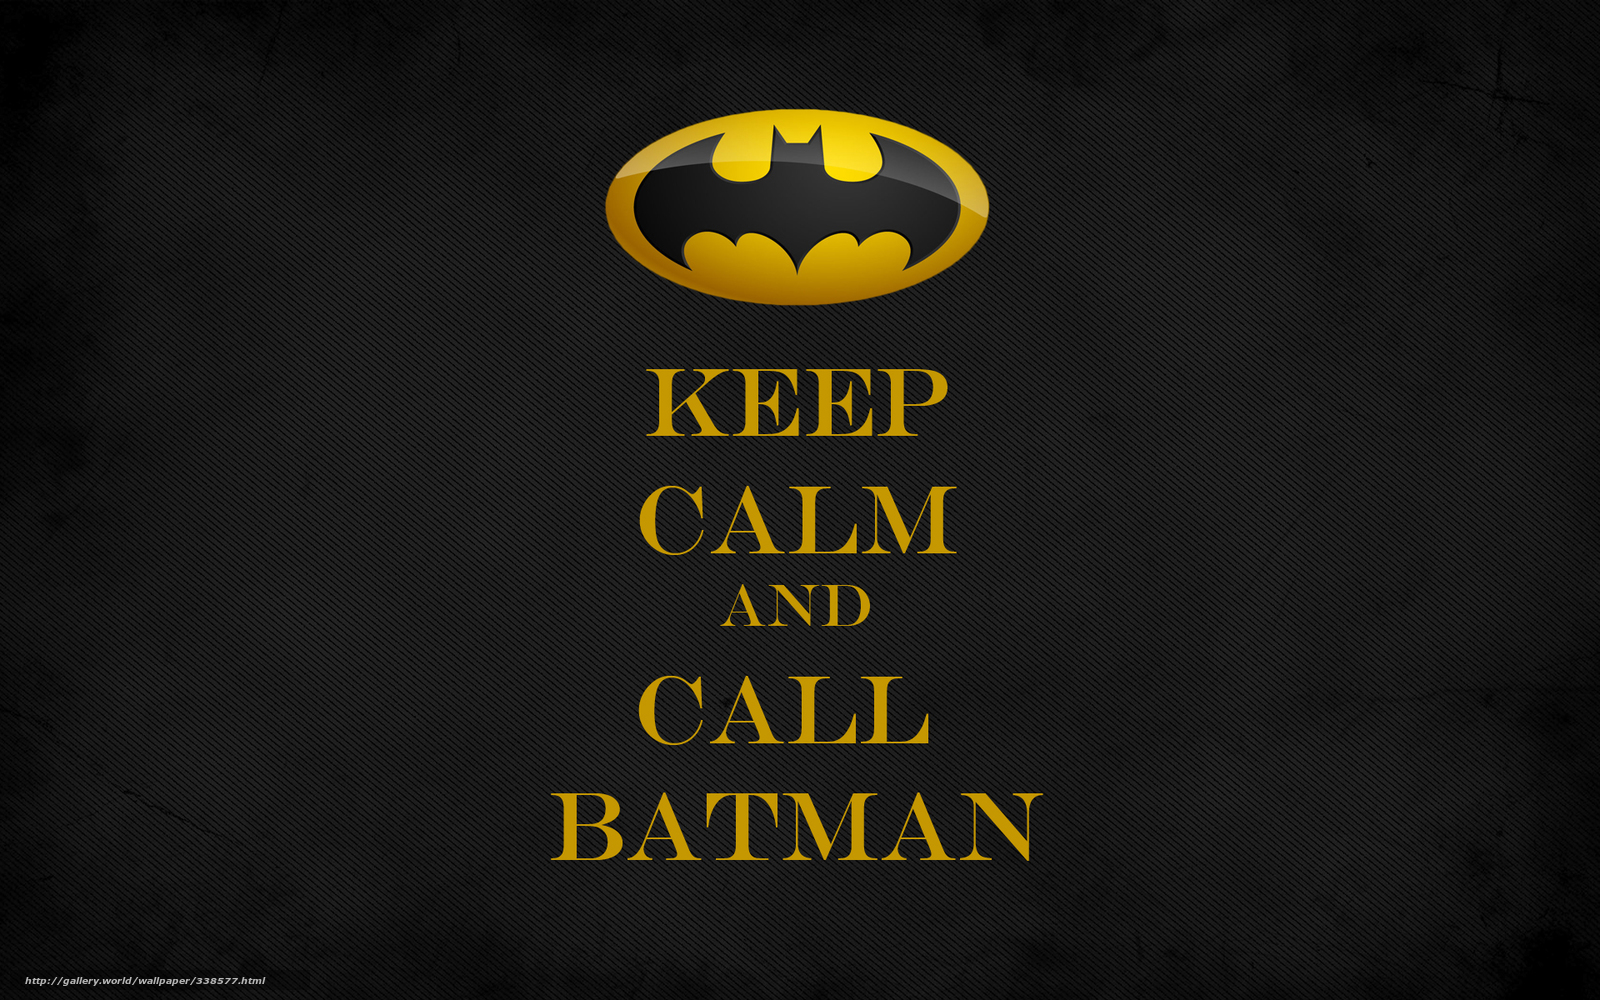 Download wallpaper keep calm and call batman batman Minimalism